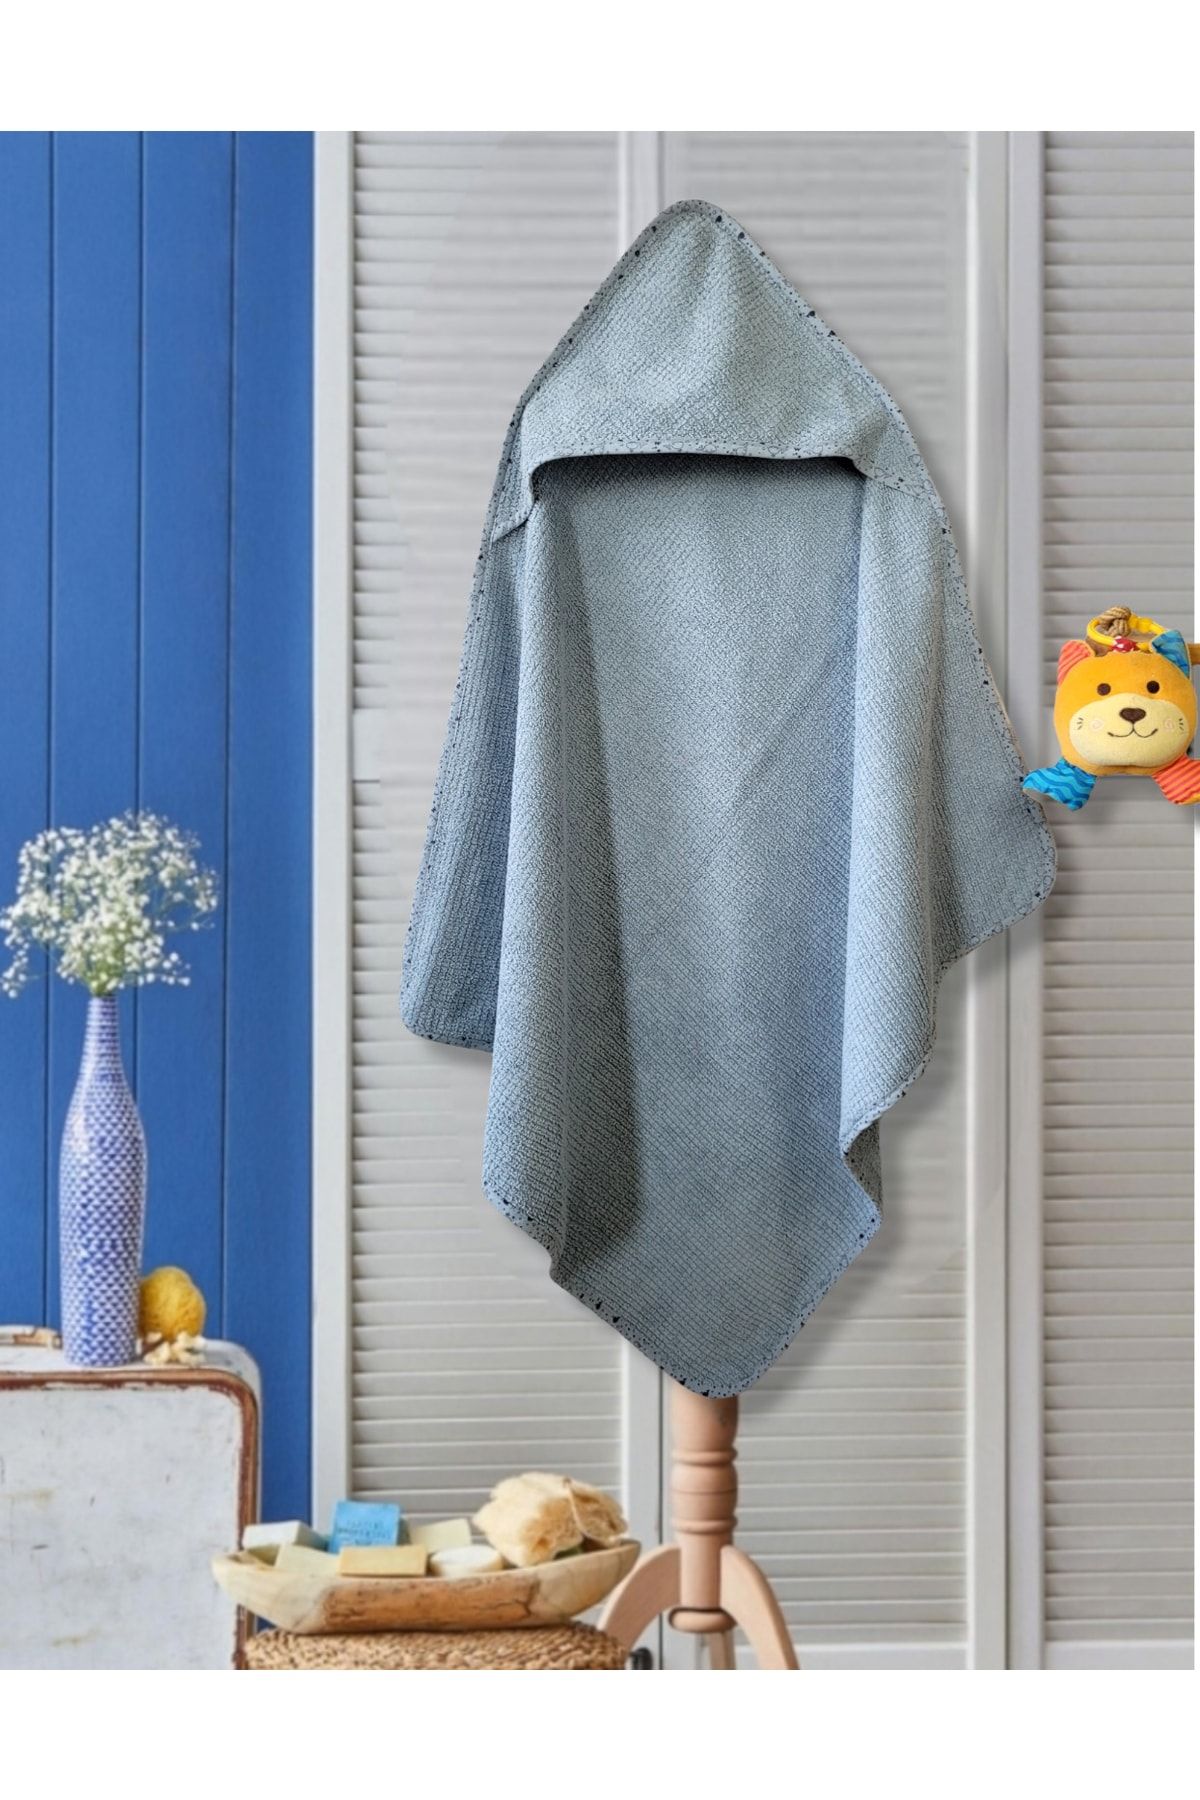 Alpar Tekstil Yumuşacık Yenidoğan/bebek Banyo Havlu Kundak 80*80cm - A. Mavi